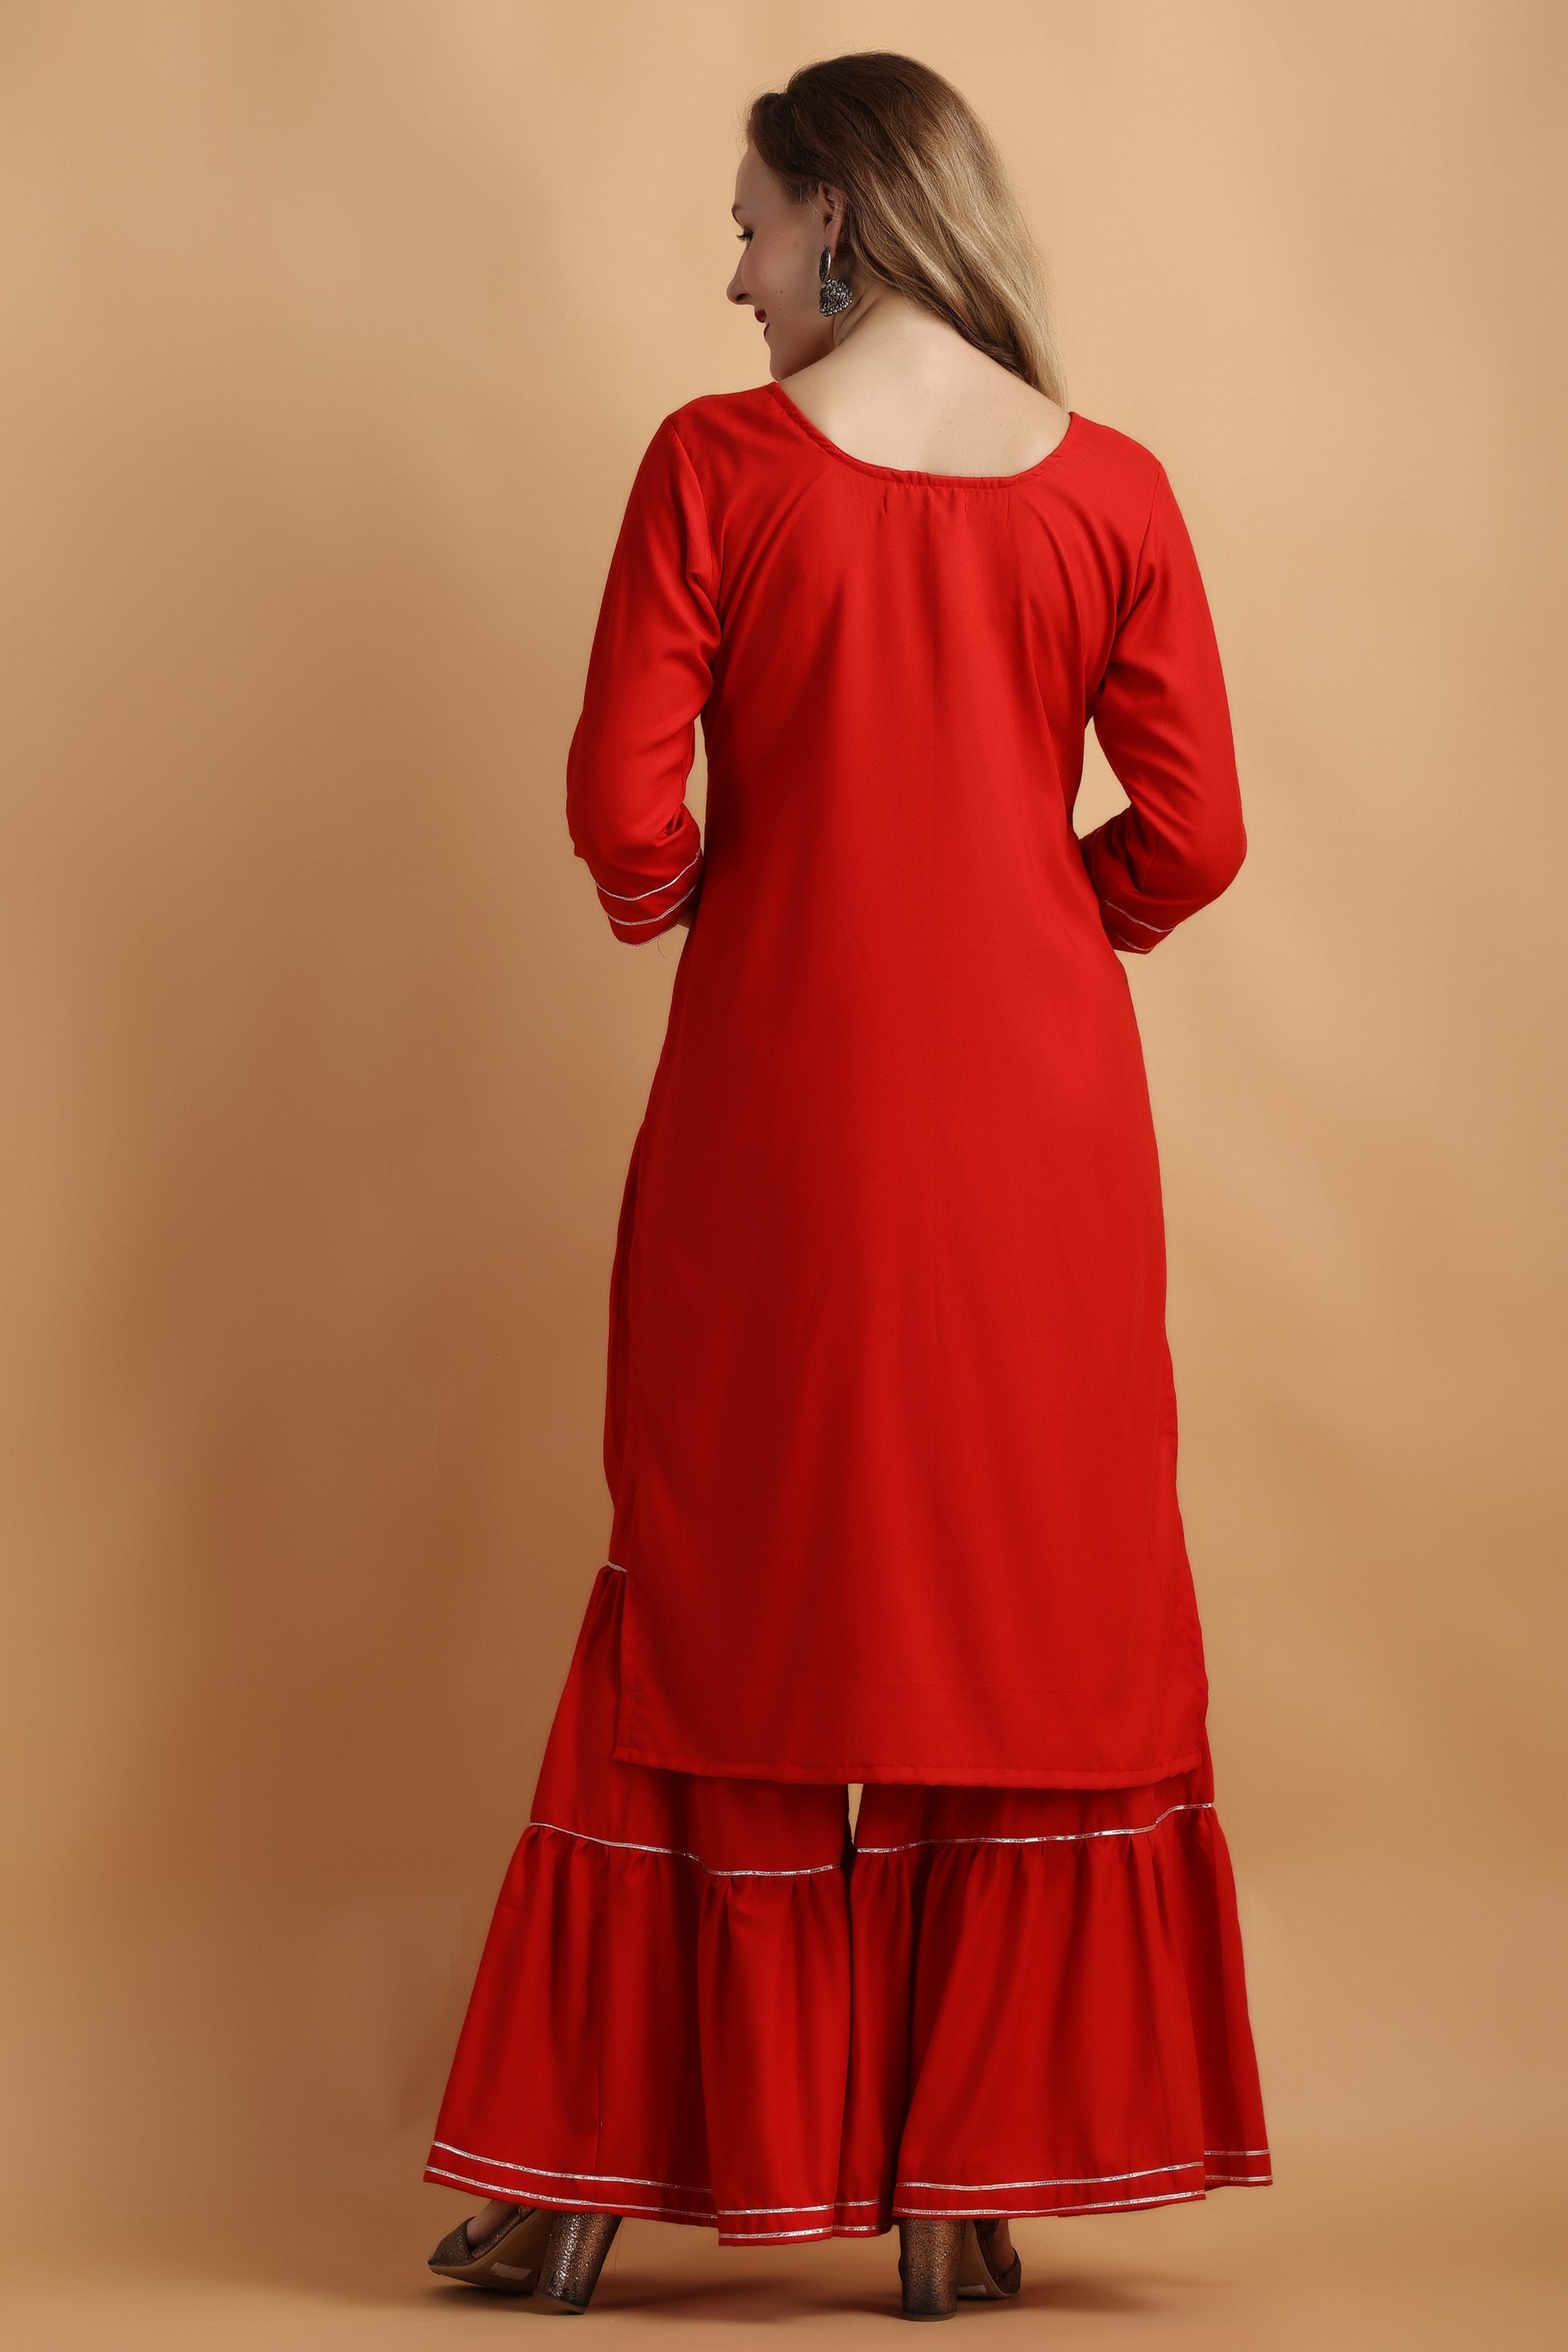 Women's Plus Size Red Party Wear Fancy Sharara Suit | Apella